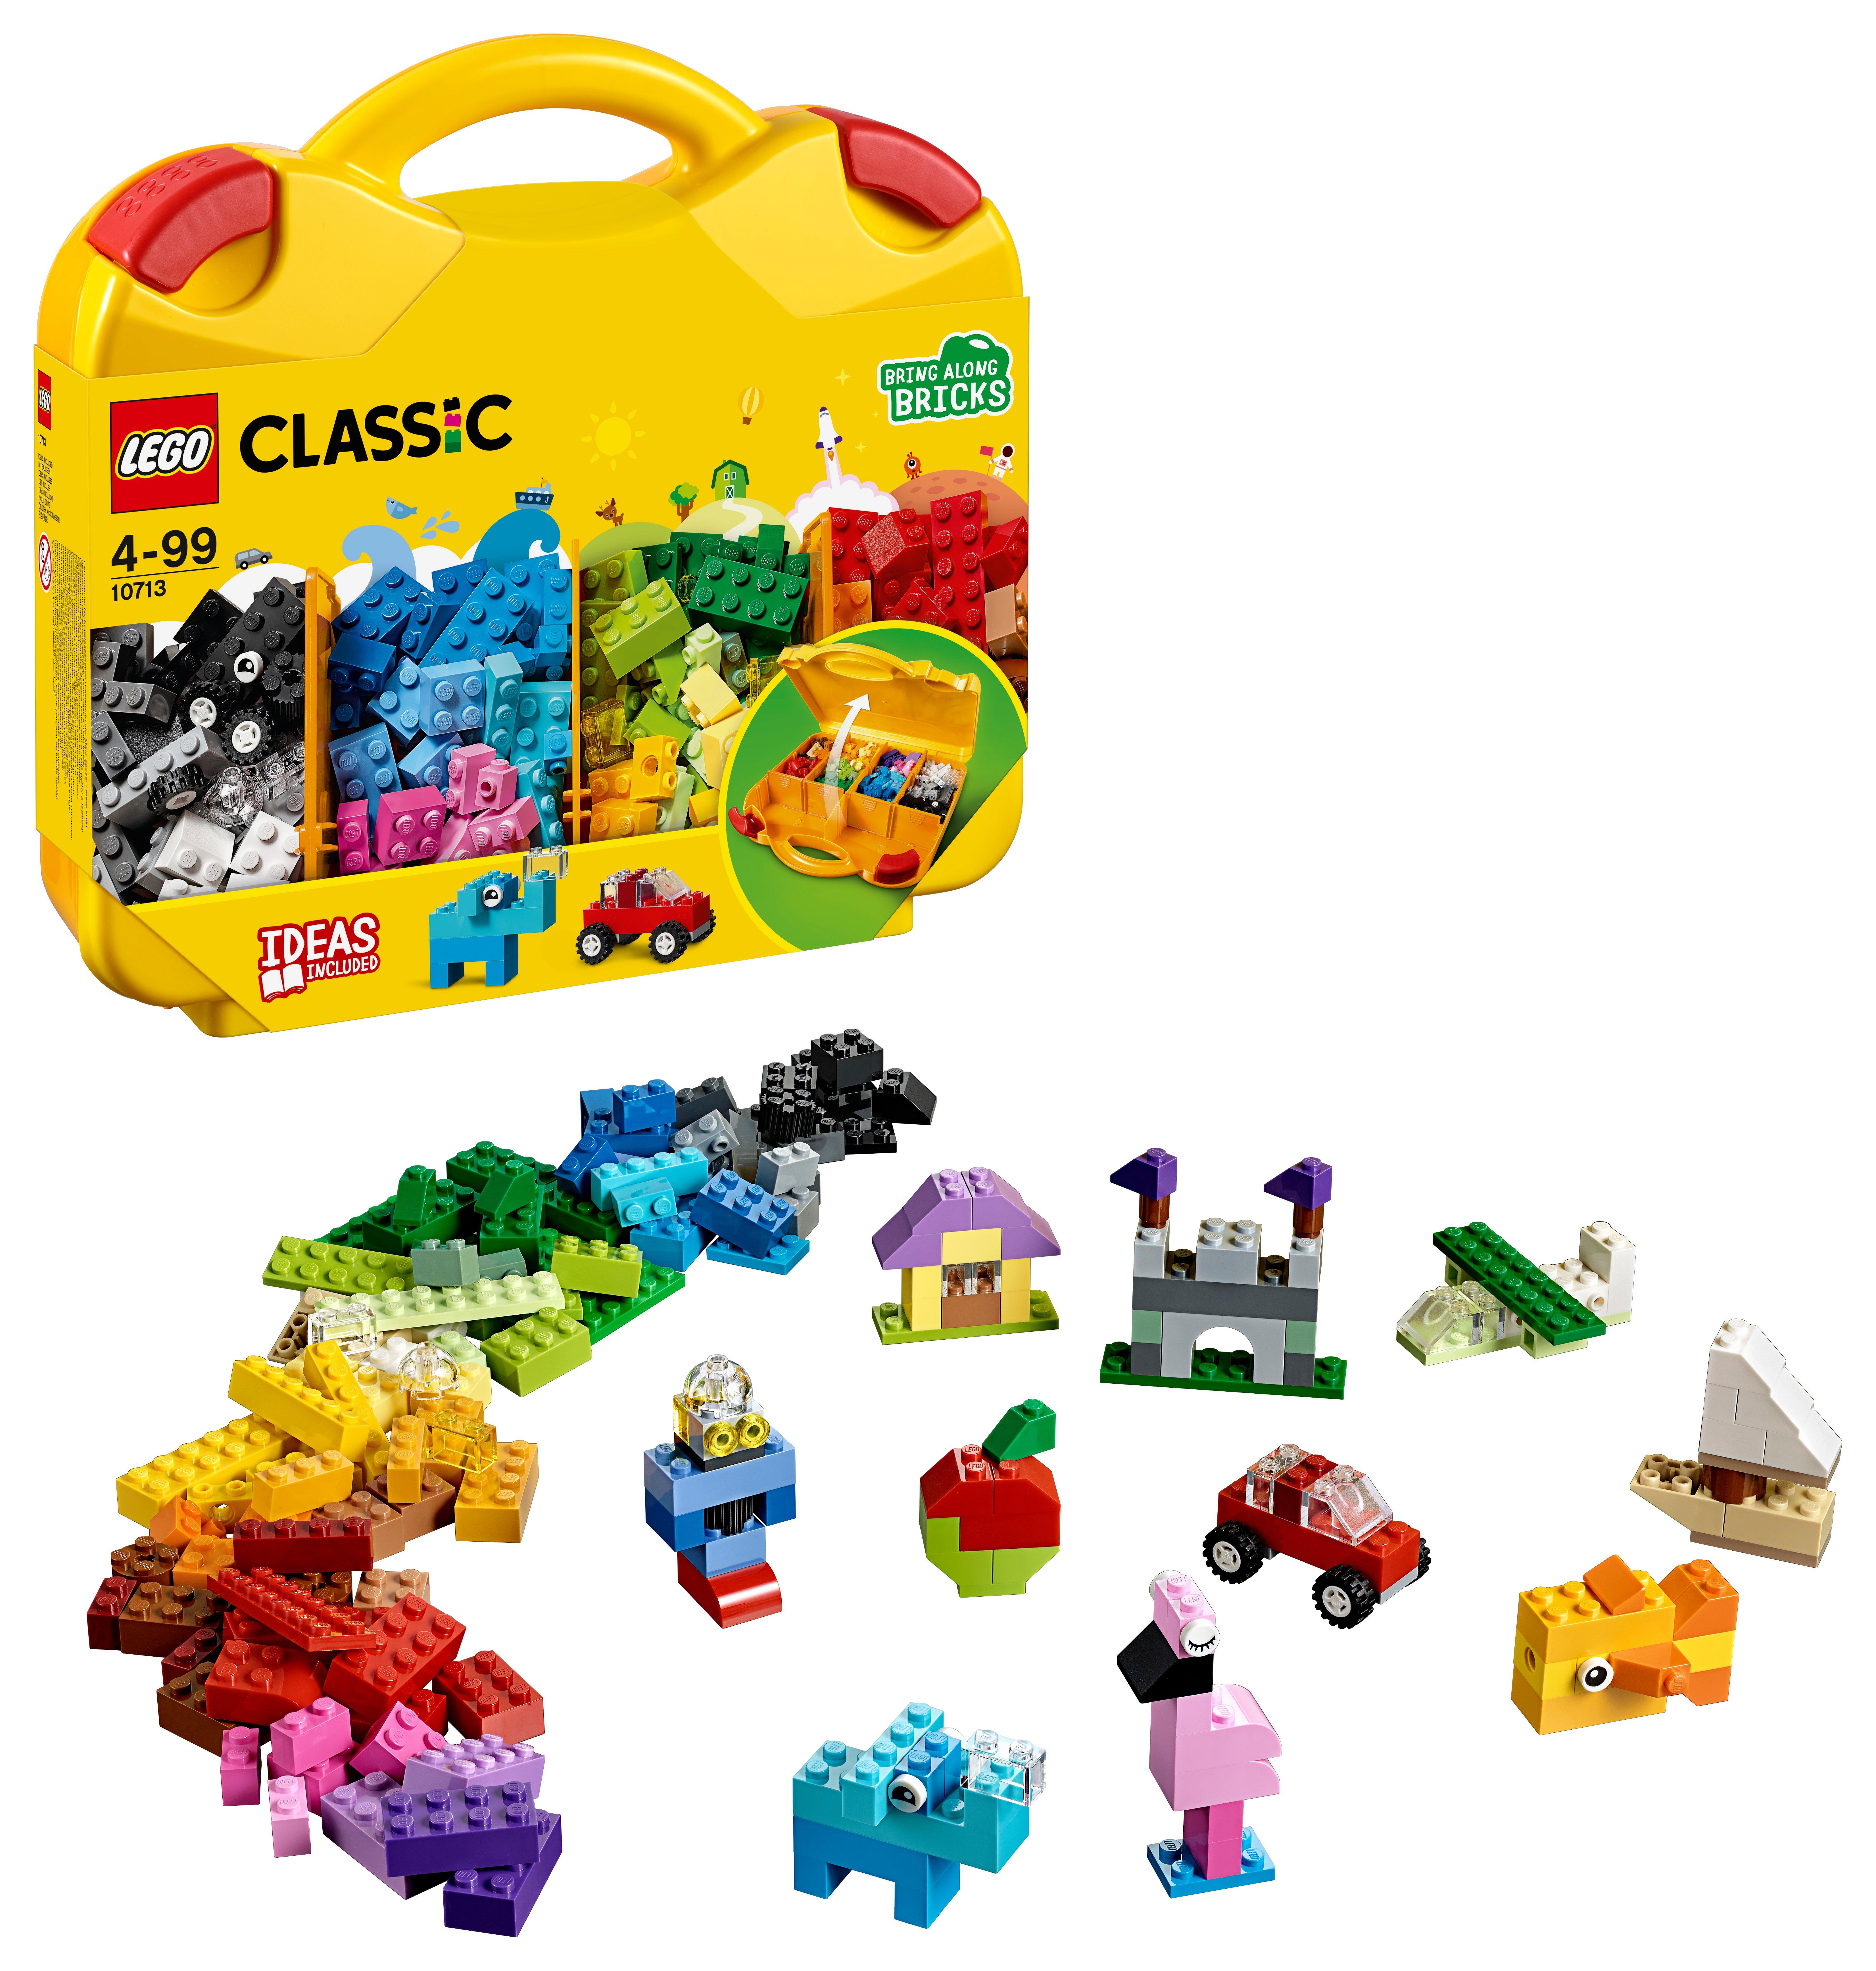 LEGO®  10713 LEGO® Bausteine Starterkoffer - Farben sortieren 